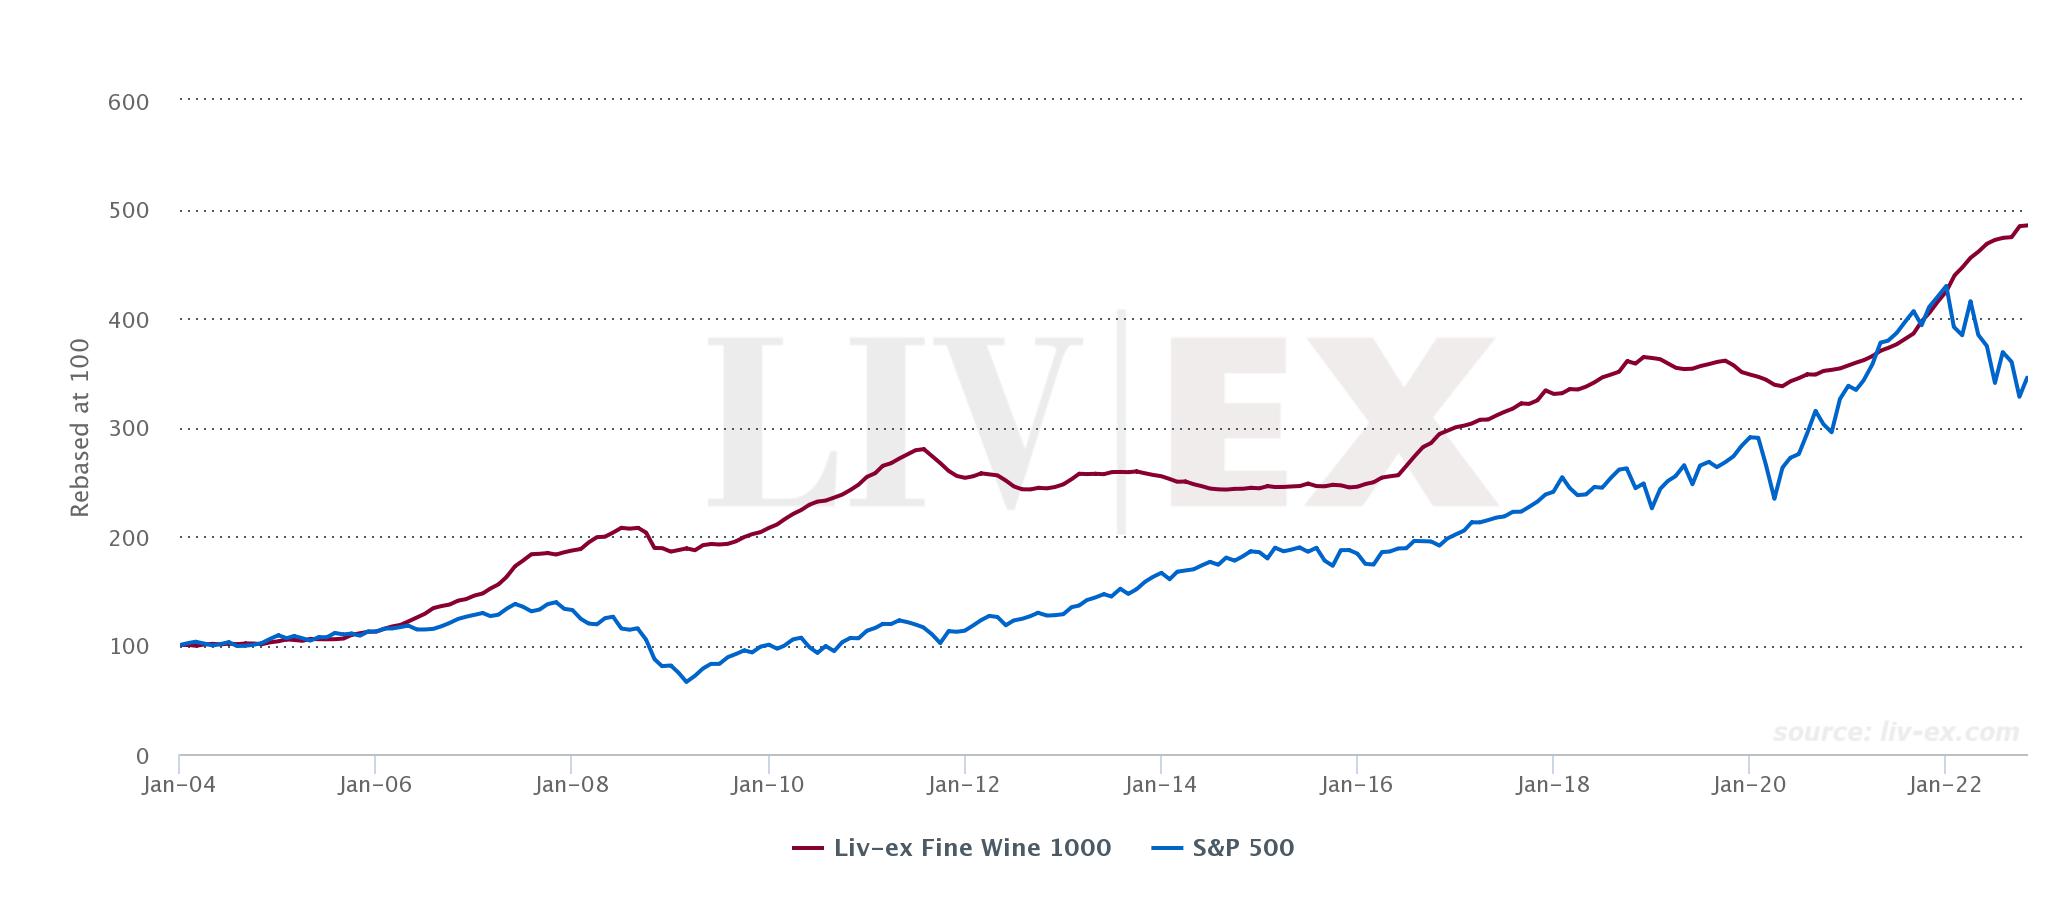 Liv-ex 1000 vs. S&P 500